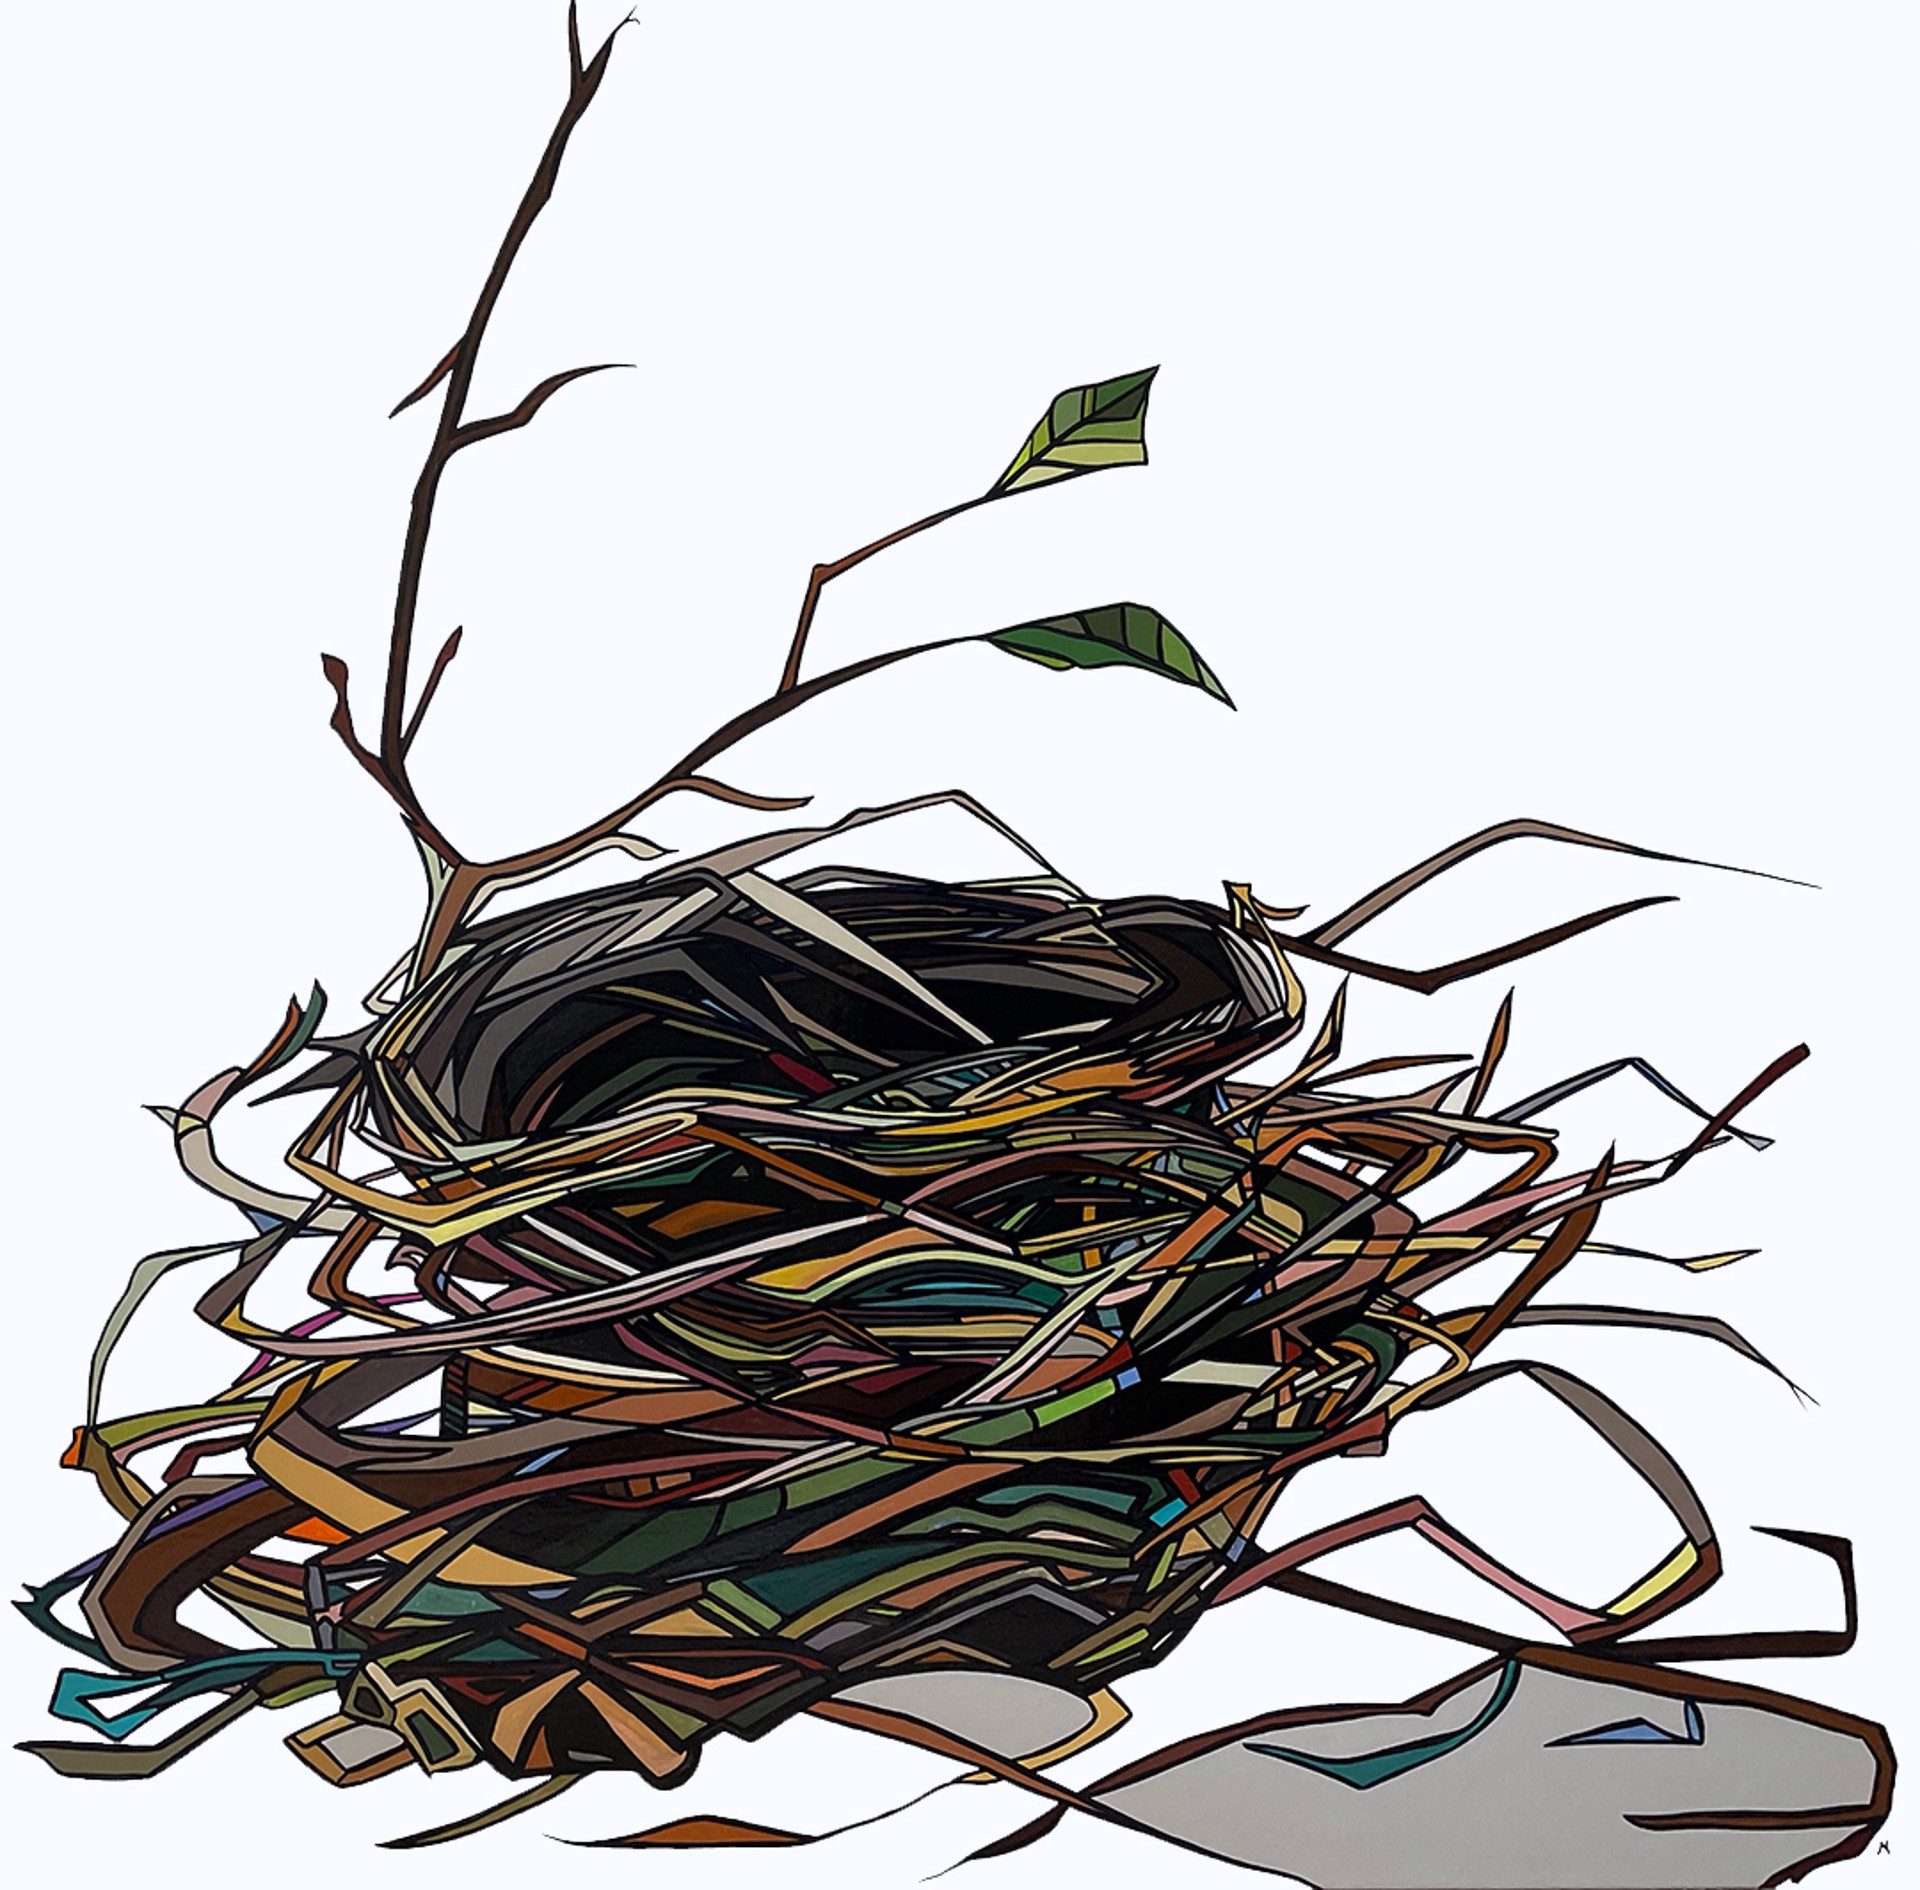 Nesty Nest by Marci Erspamer